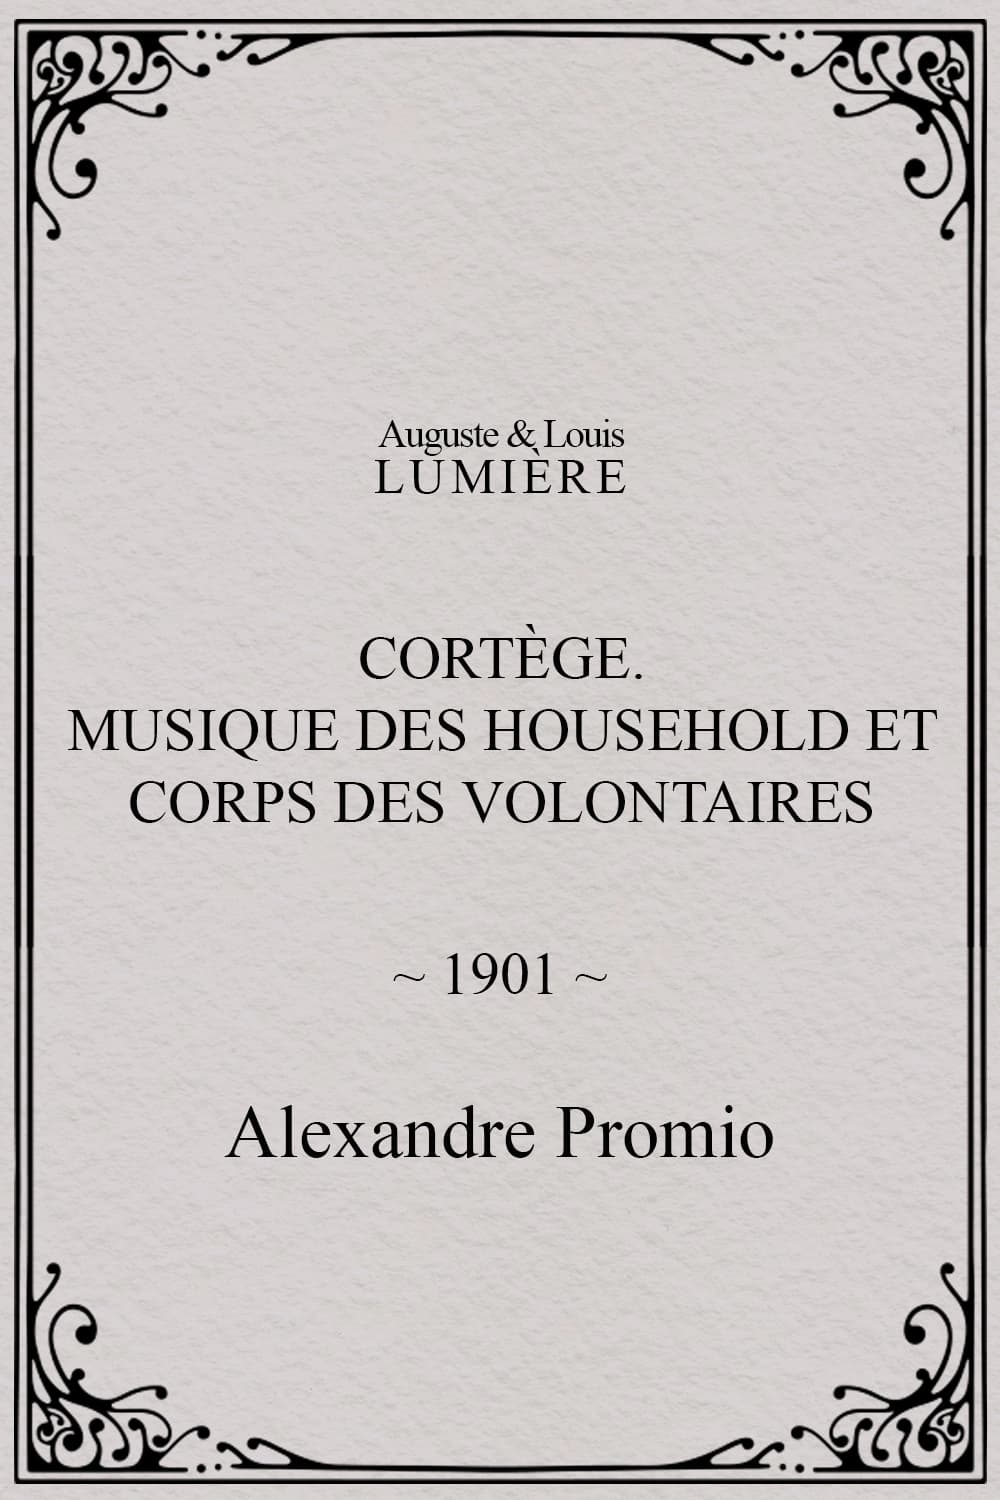 Cortège. Musique des Household et corps des volontaires (1901)